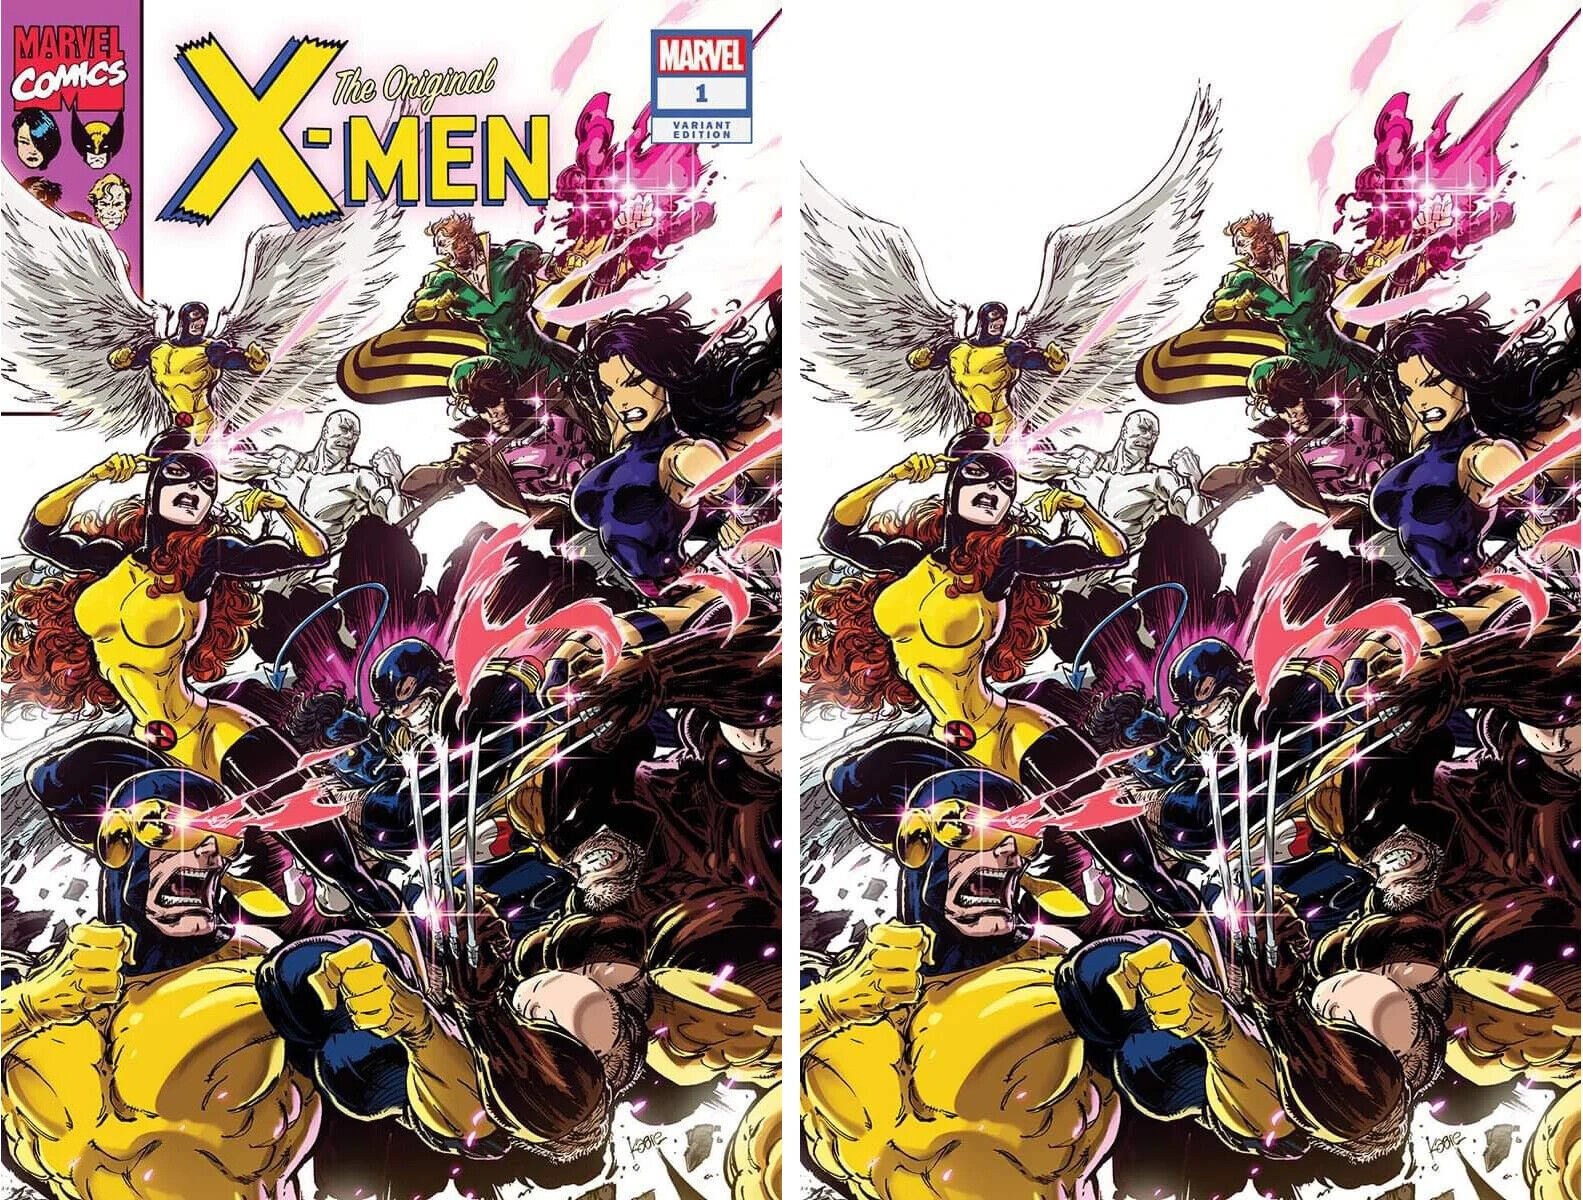 THE ORIGINAL X-MEN #1 (KAARE ANDREWS EXCLUSIVE TRADE/VIRGIN VARIANT SET)